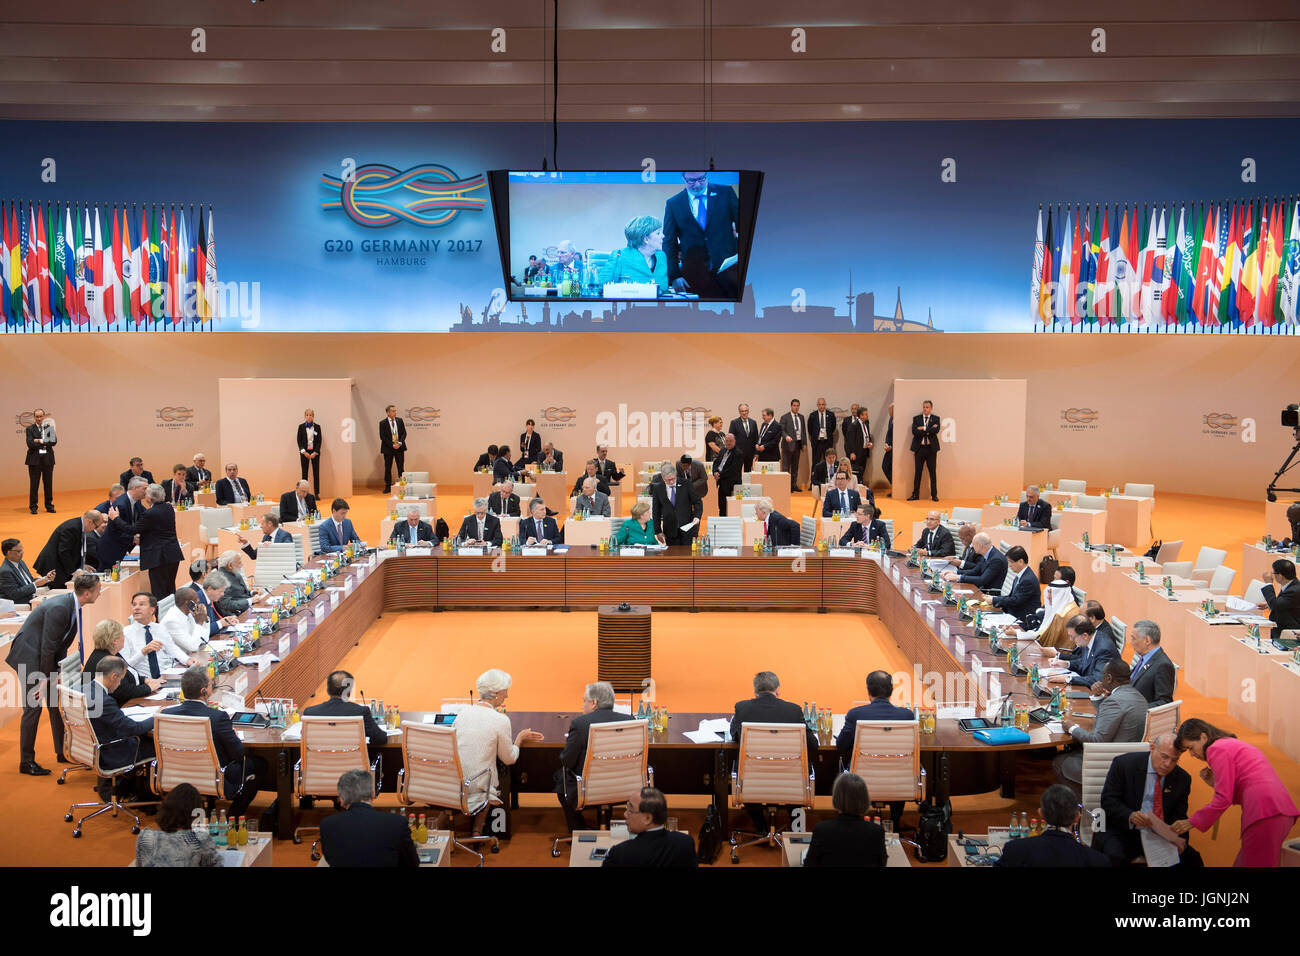 Führenden Politiker der Welt versammeln sich vor dem Start der dritten Plenarsitzung am Finaltag des G20-Gipfeltreffens im Congress Center Hamburg Handel 8. Juli 2017 in Hamburg, Deutschland.   (OMT‑Beschlüsse/Bergmann über Planetpix) Stockfoto